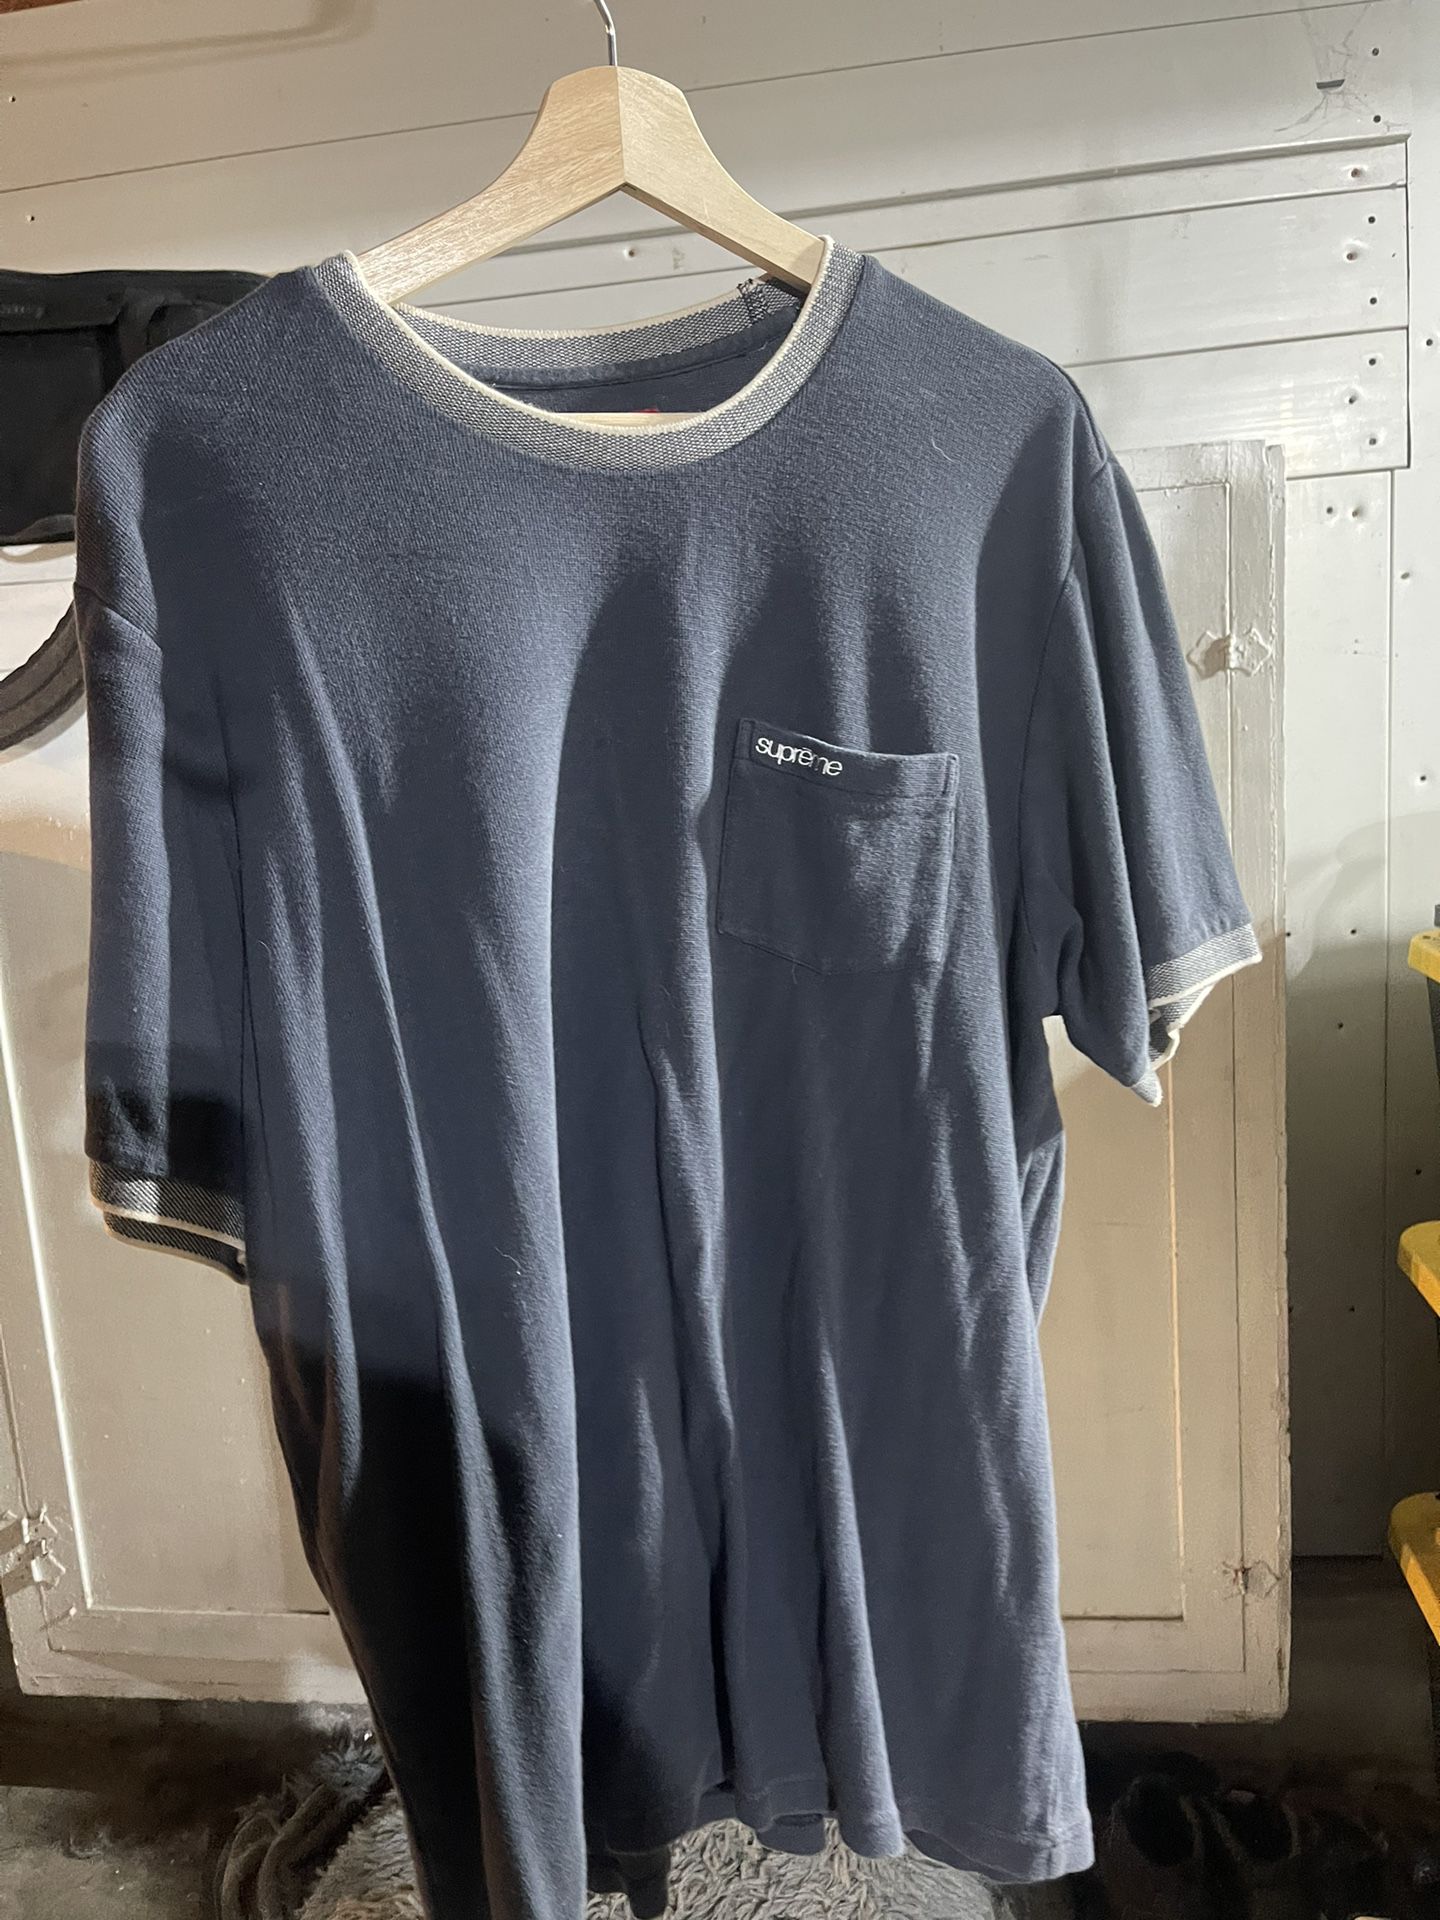 Supreme T Shirt XL